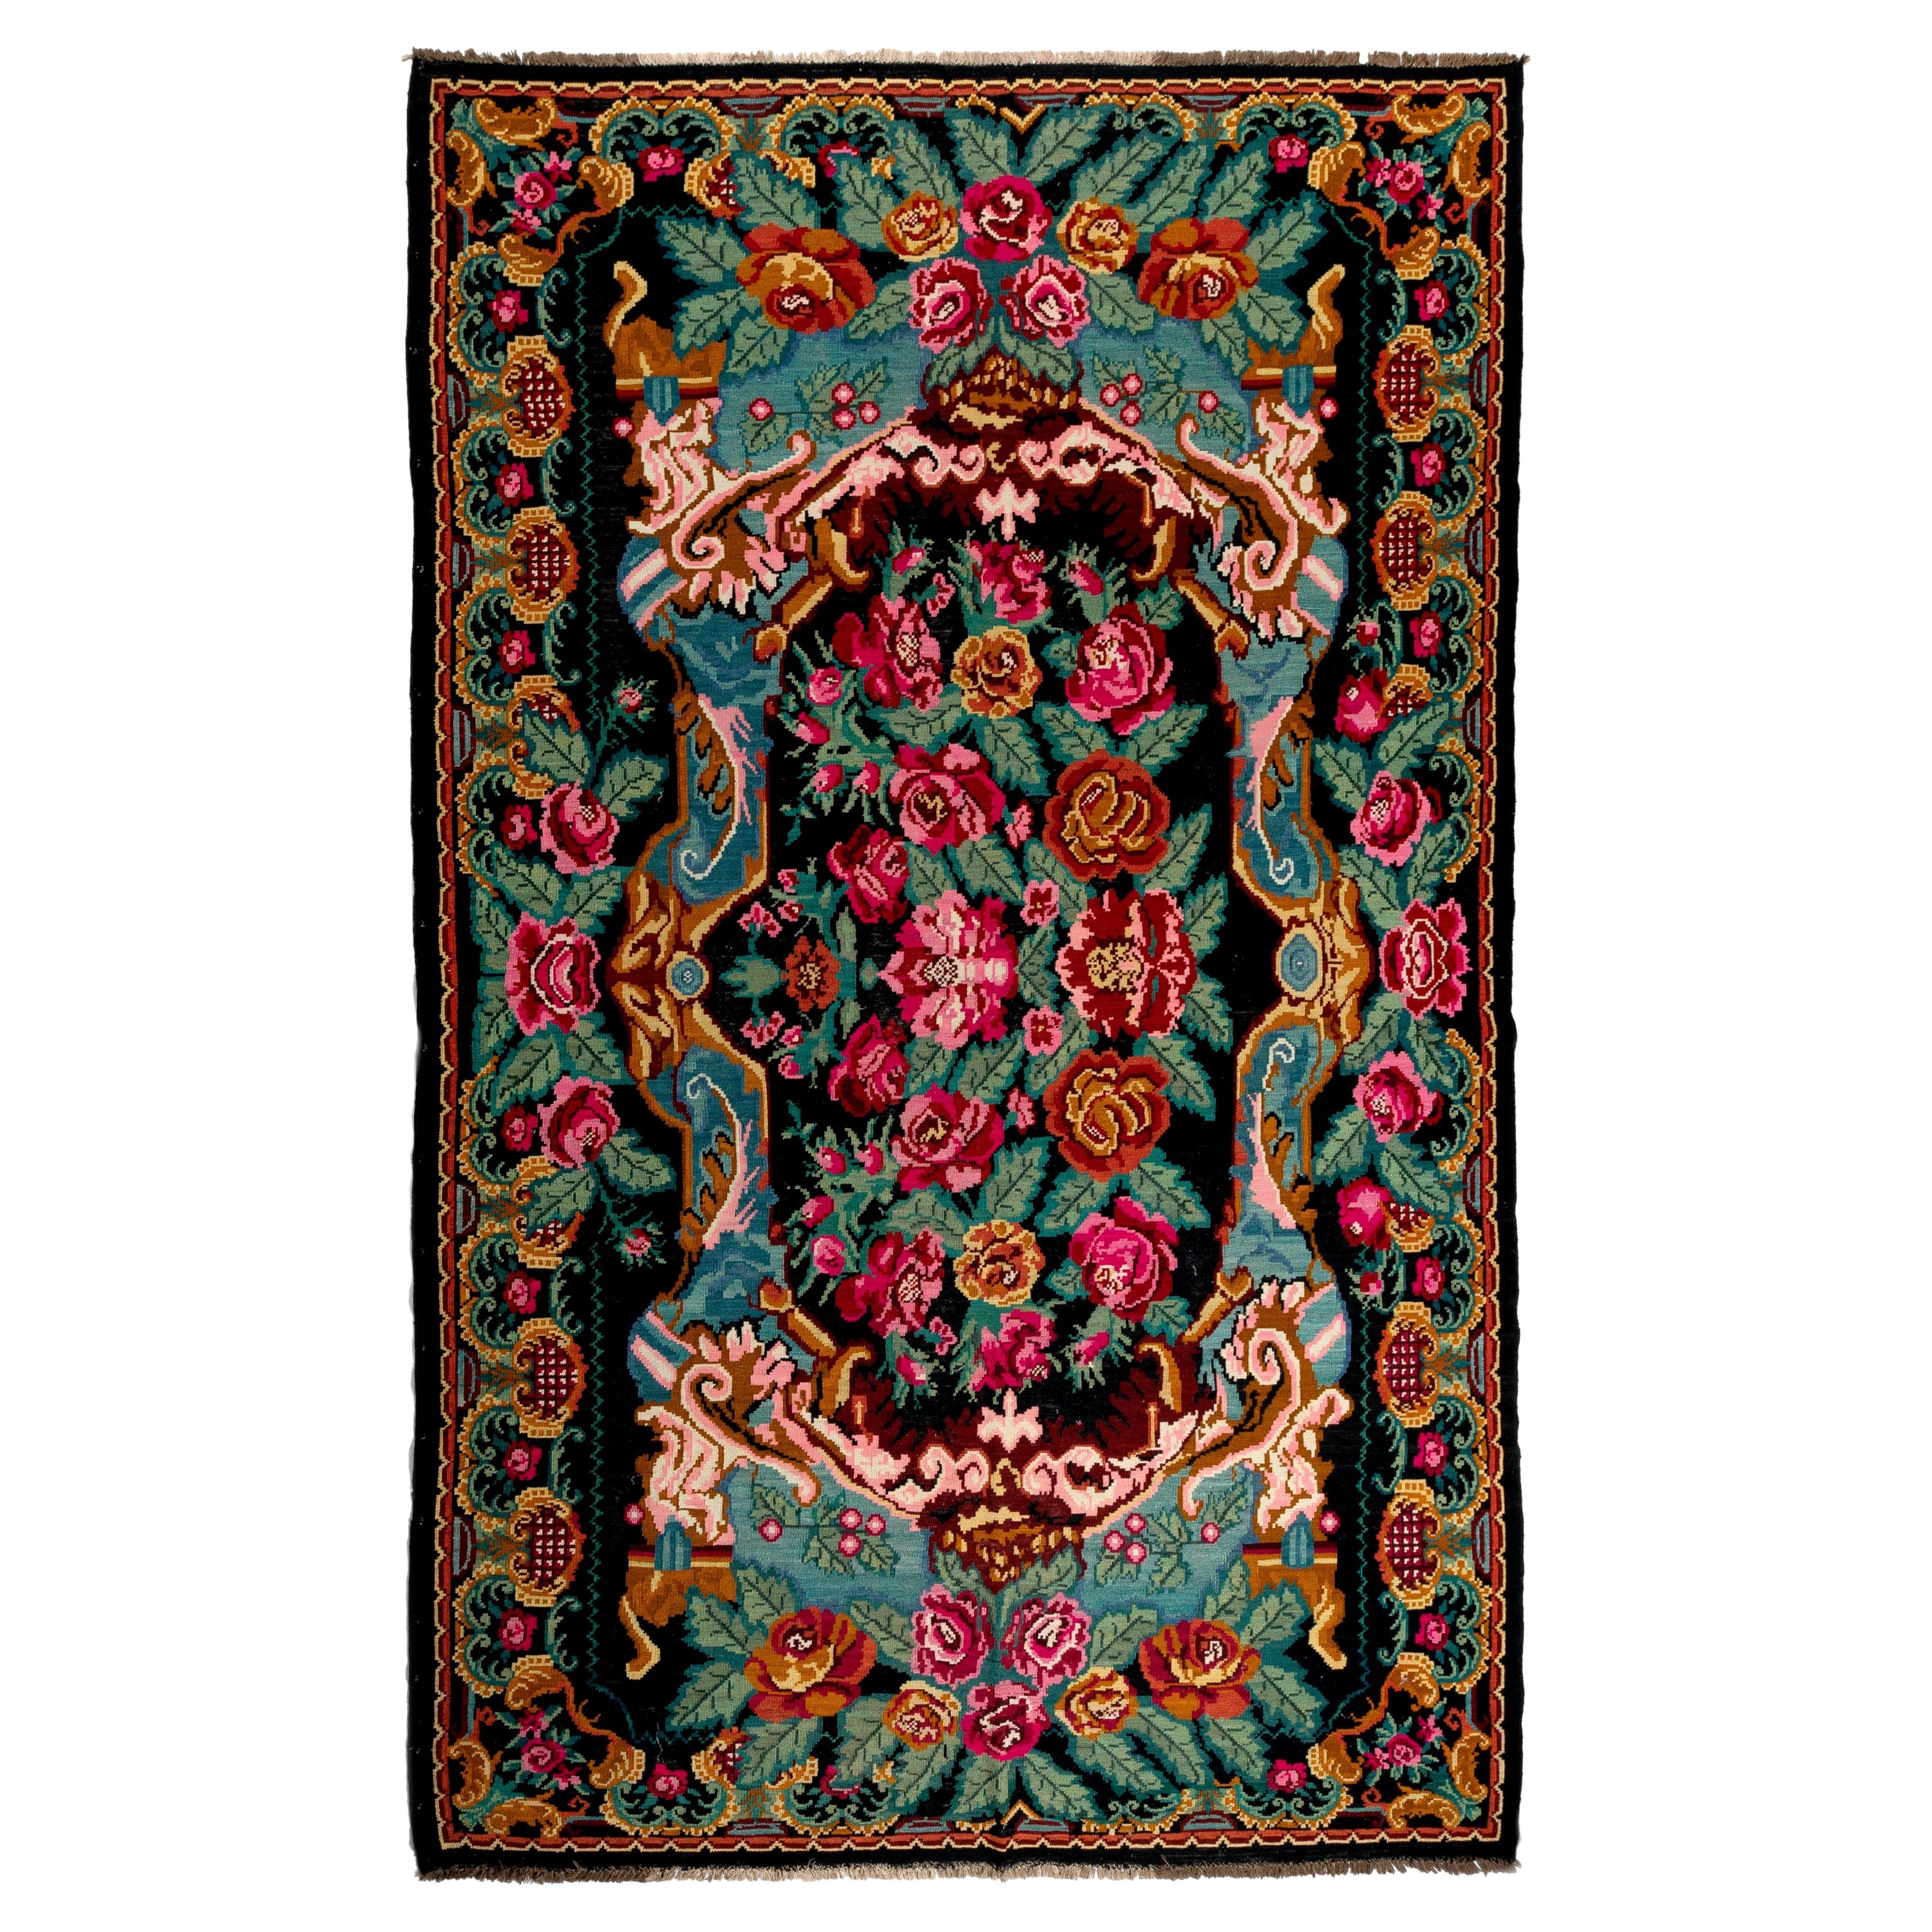 Tapis Kilim bessarabique vintage en laine tissée à la main à motifs floraux, 7,2 x 1,6 m